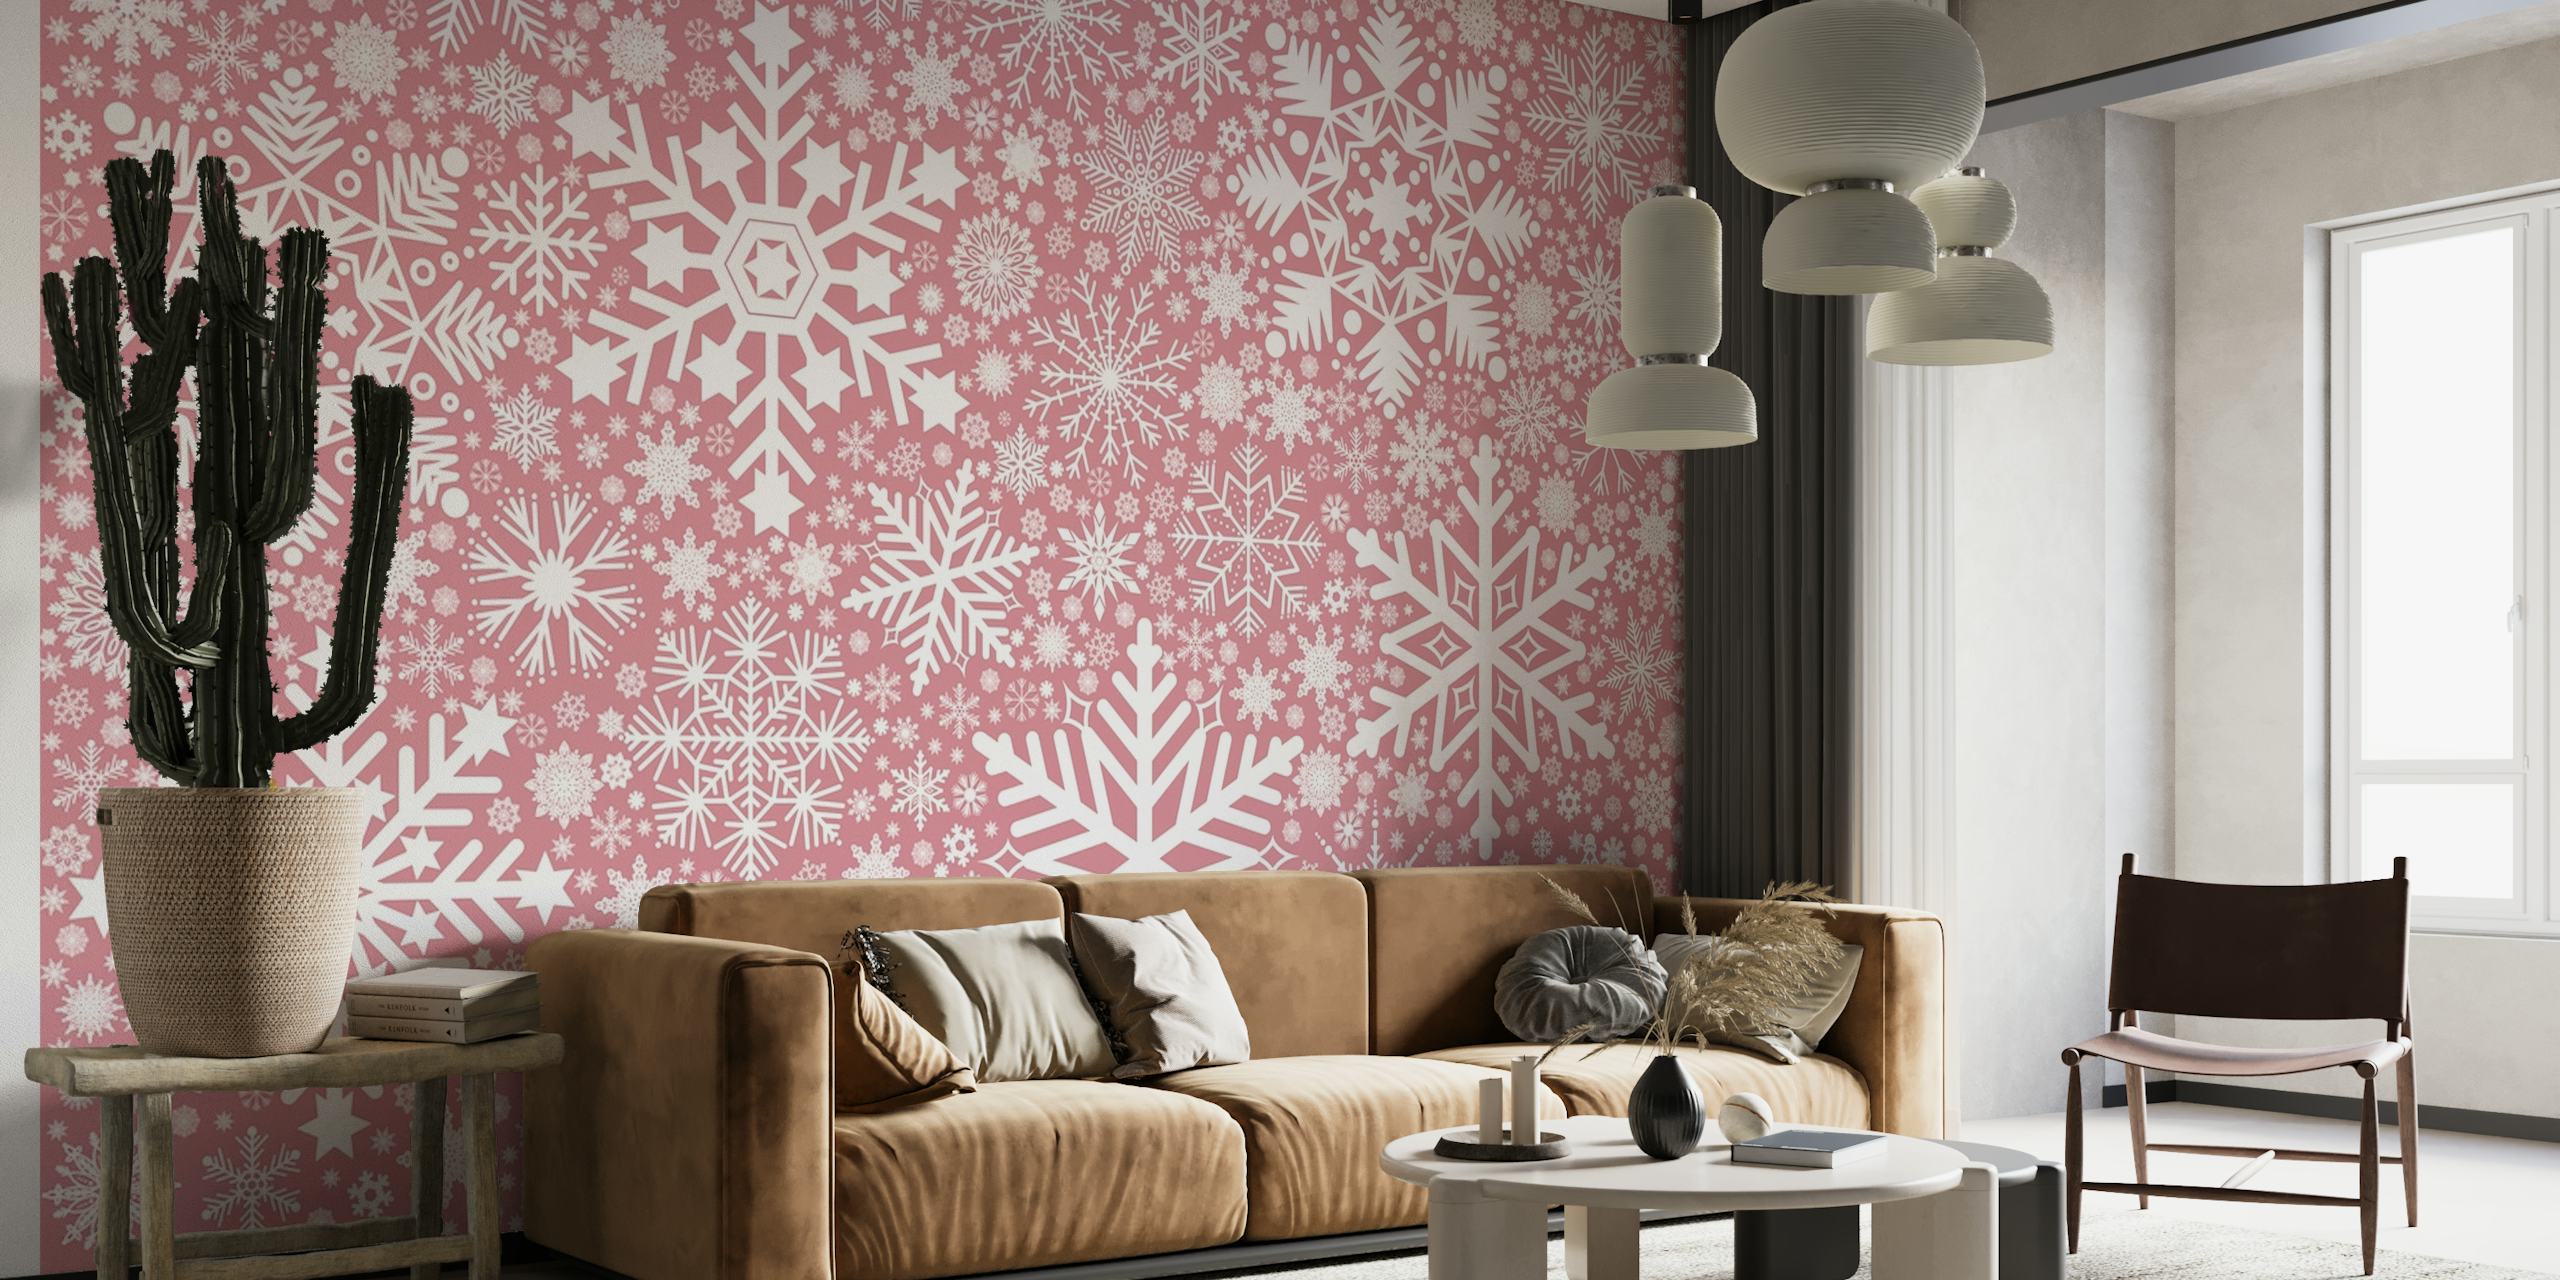 Elegant rosa snøfnuggmønster veggmaleri for koselig interiørdekorasjon